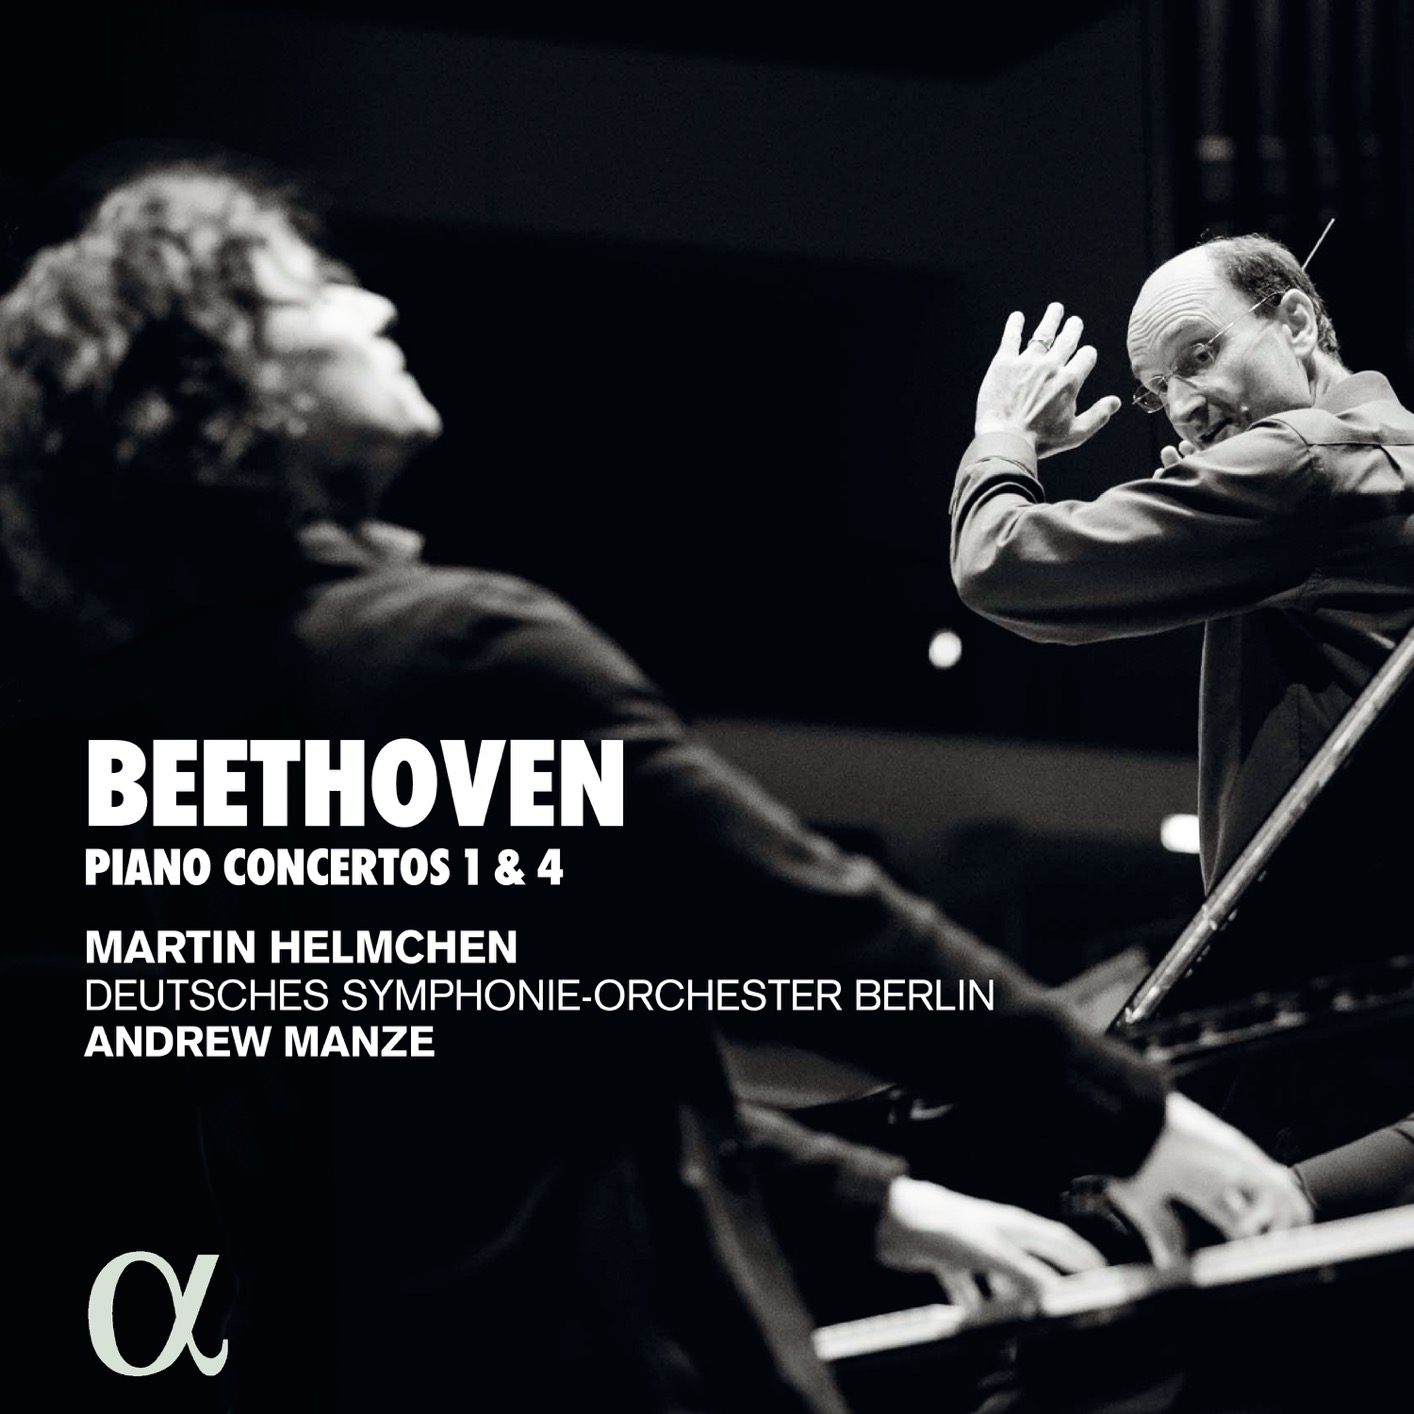 Martin Helmchen, Deutsches Symphonie-Orchester Berlin - Beethoven - Pianos concertos 1 & 4 (2020) [FLAC 24bit/96kHz]